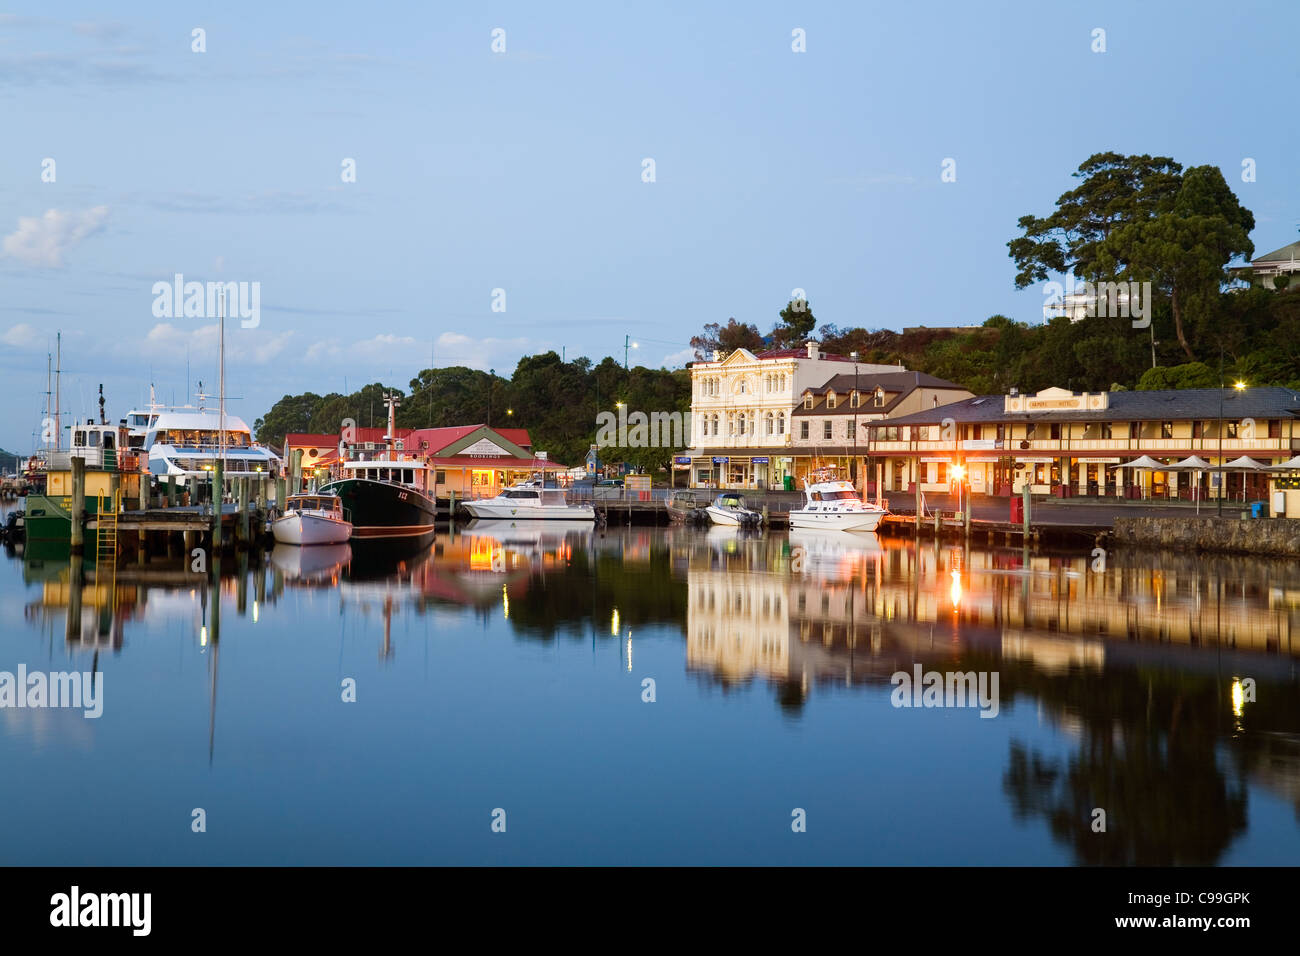 Hafen-Stadt von Strahan im Morgengrauen. Strahan, Tasmanien, Australien Stockfoto